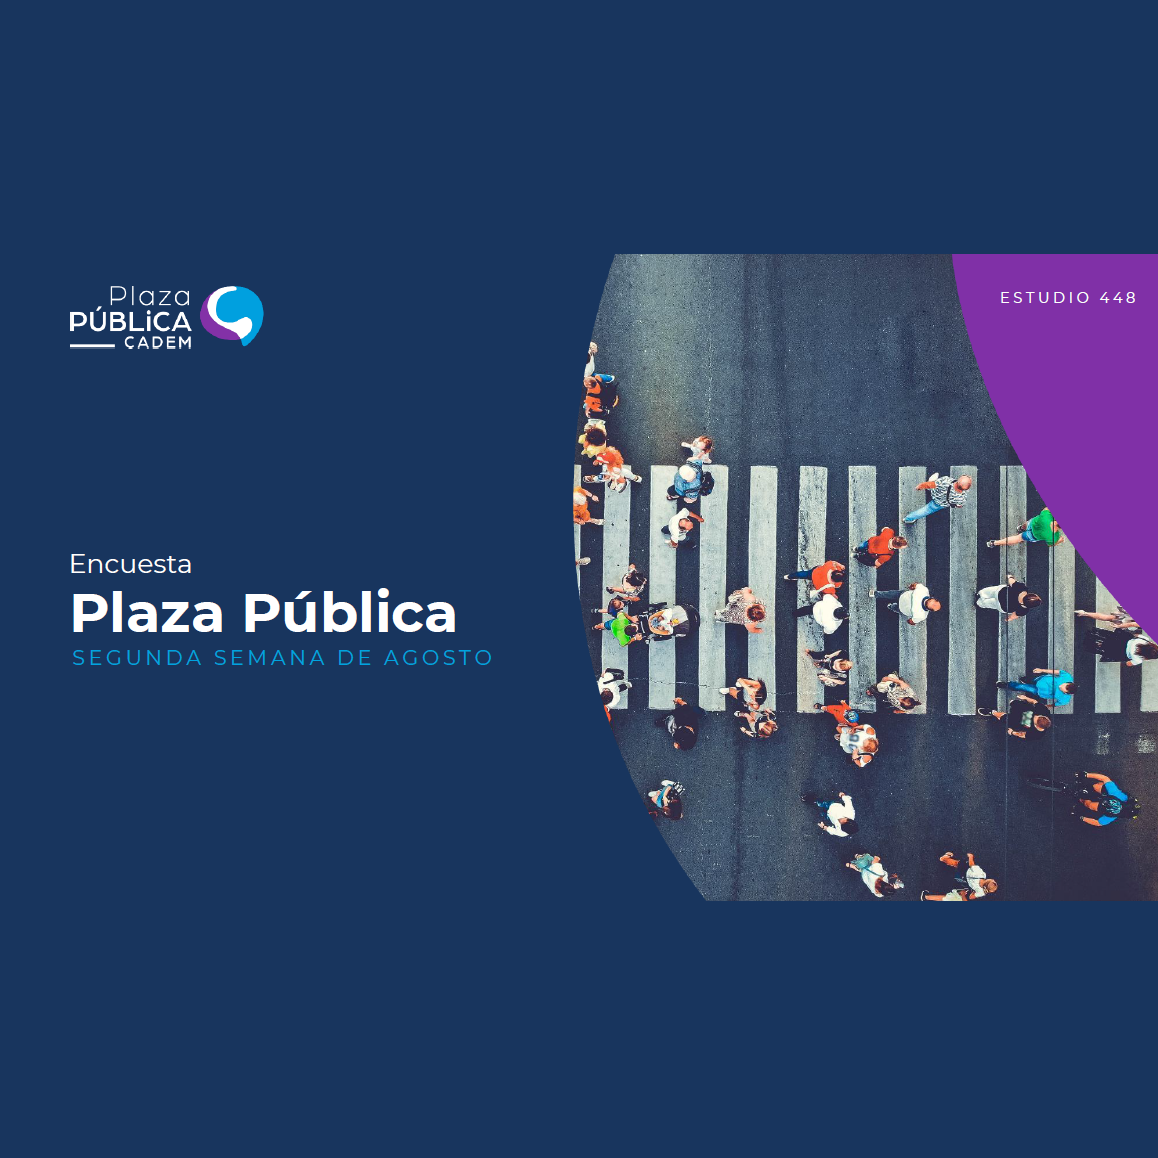 Plaza pública Cadem – Segunda semana de agosto